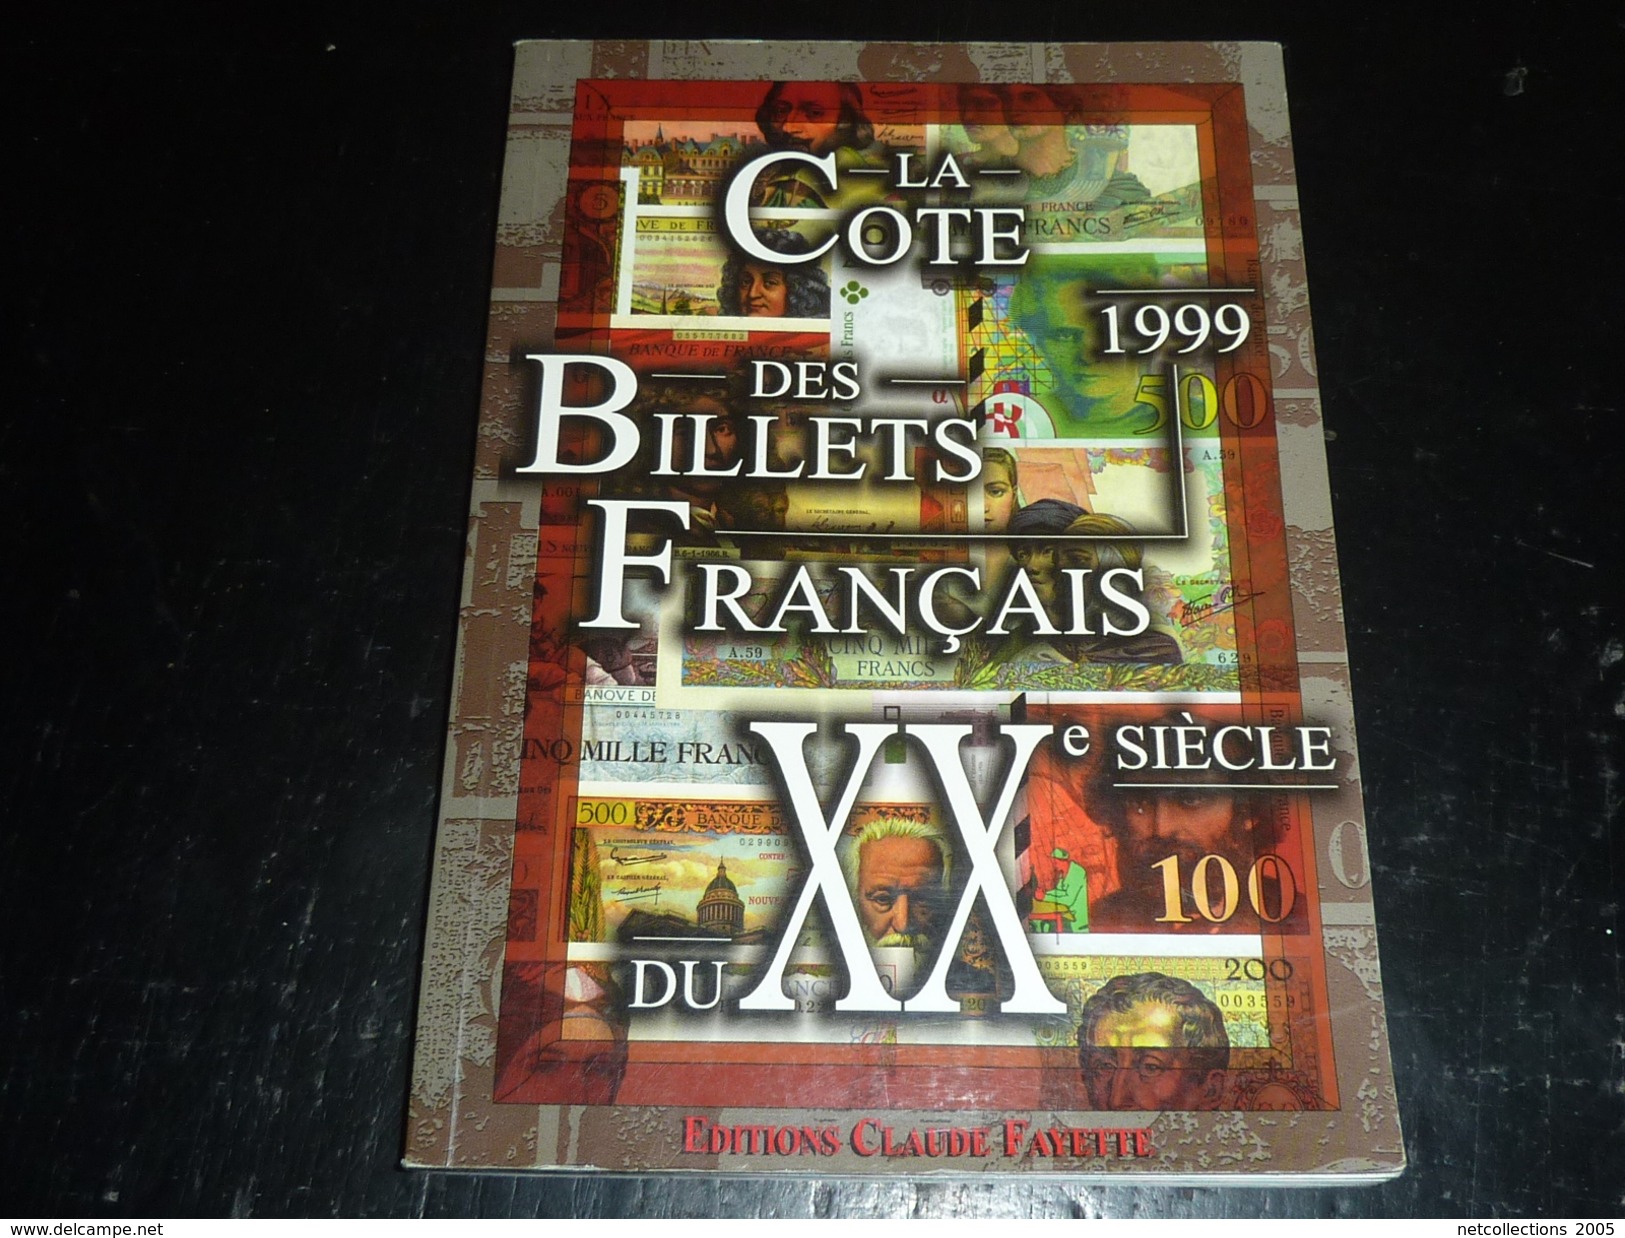 LA COTE DES BILLETS FRANCAIS DU XX° Siècle 1999 - EDITION CLAUDE FAYETTE - TOUT EN COULEUR COTE EN FRANC - Français